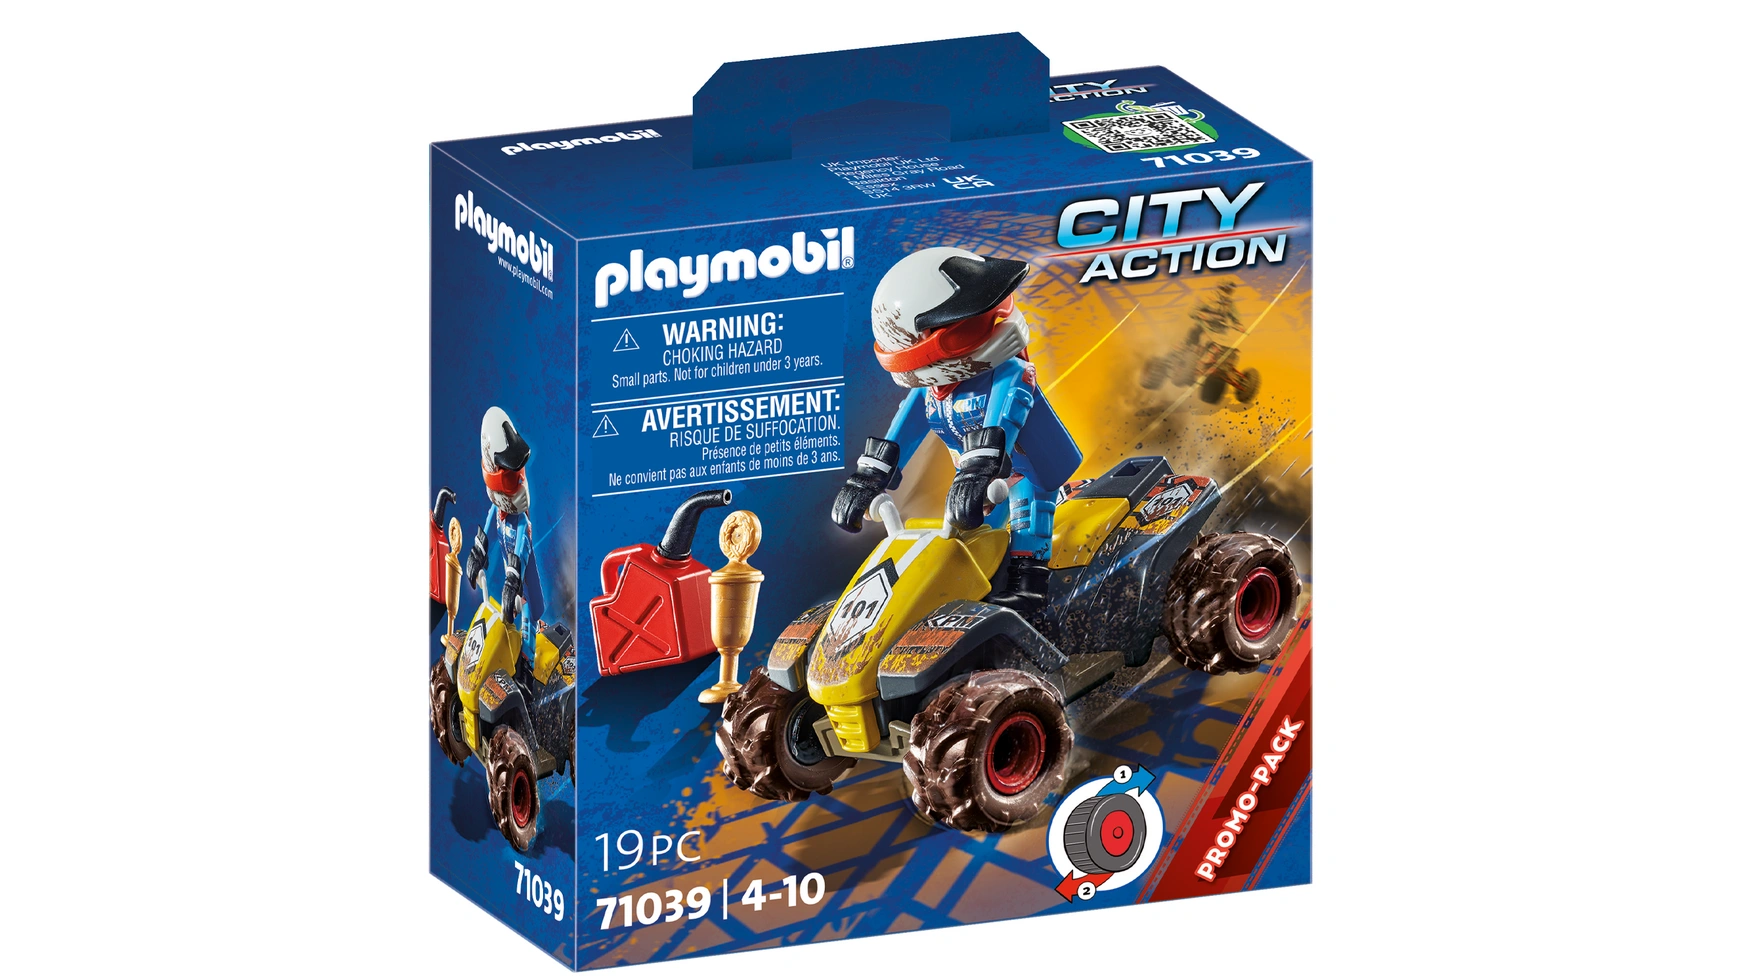 City action квадроцикл для бездорожья Playmobil цена и фото